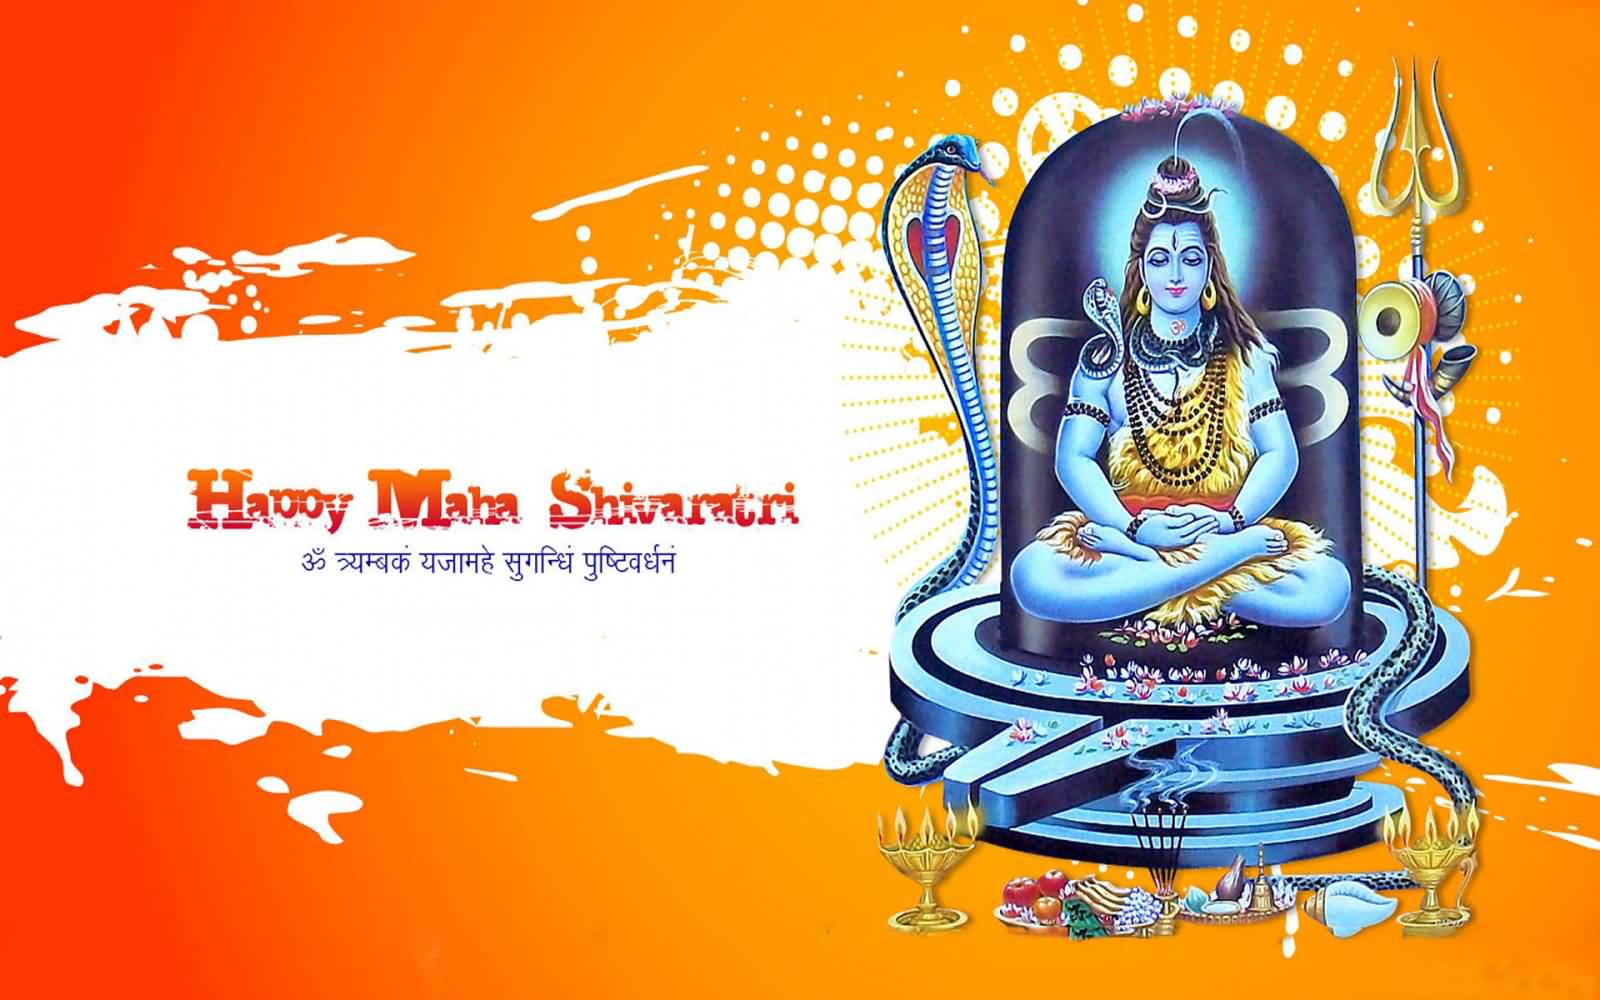 Happy Maha Shivratri 2017 HD Wallpaper